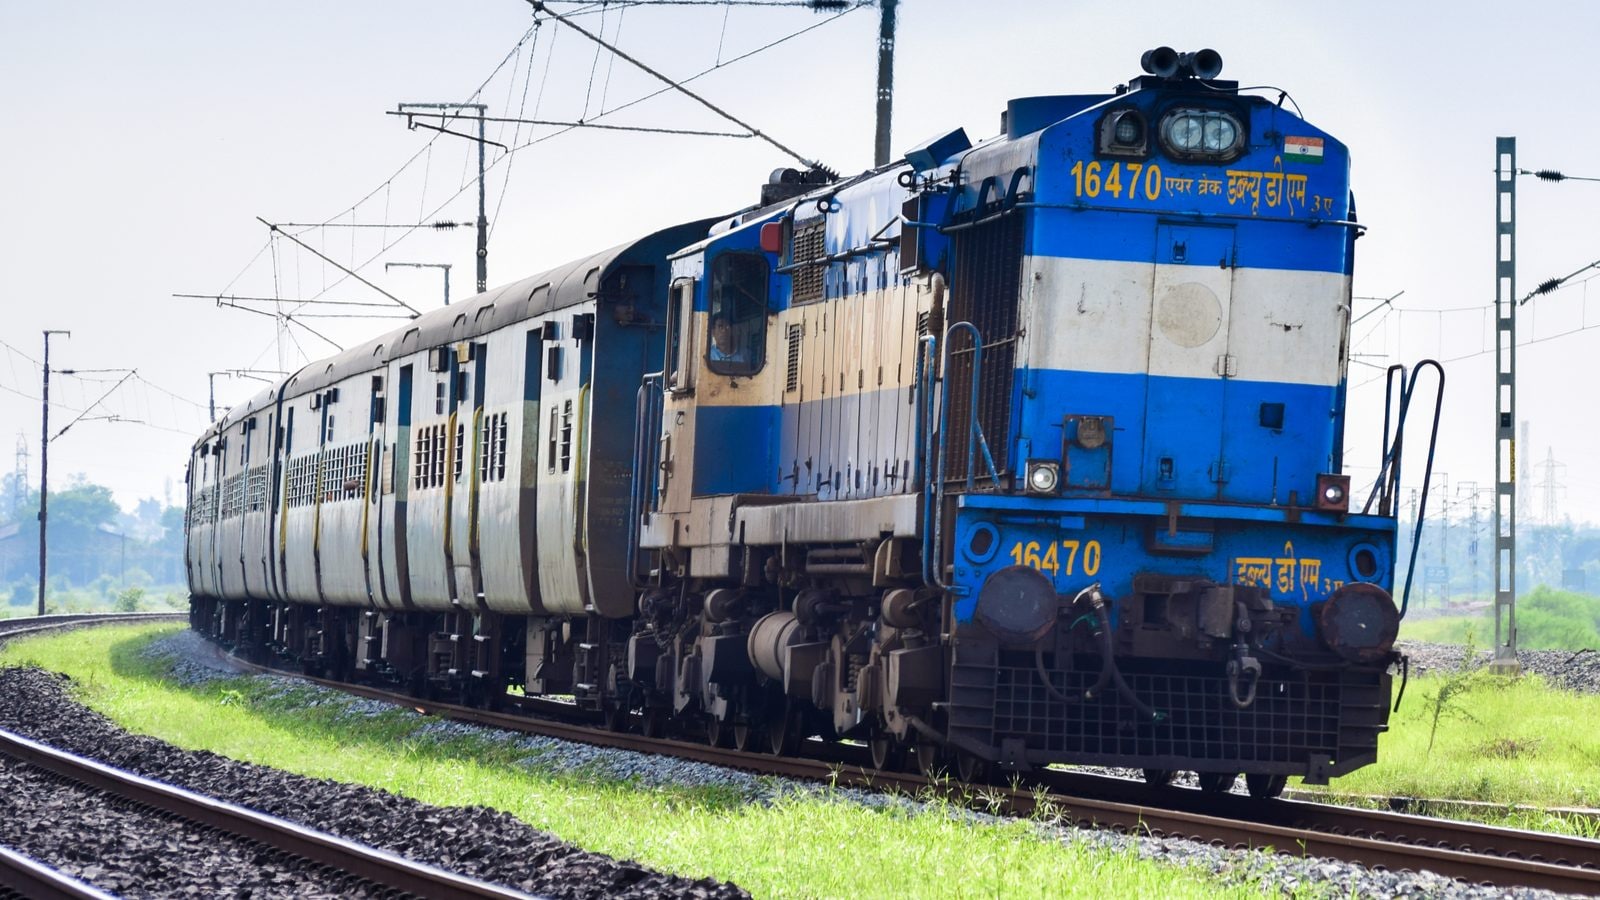 कंसोर्टियम बैग रेलवे ऑर्डर के रूप में रामकृष्ण फोर्जिंग रैलियां 9%, टीटागढ़ वैगन्स राइज